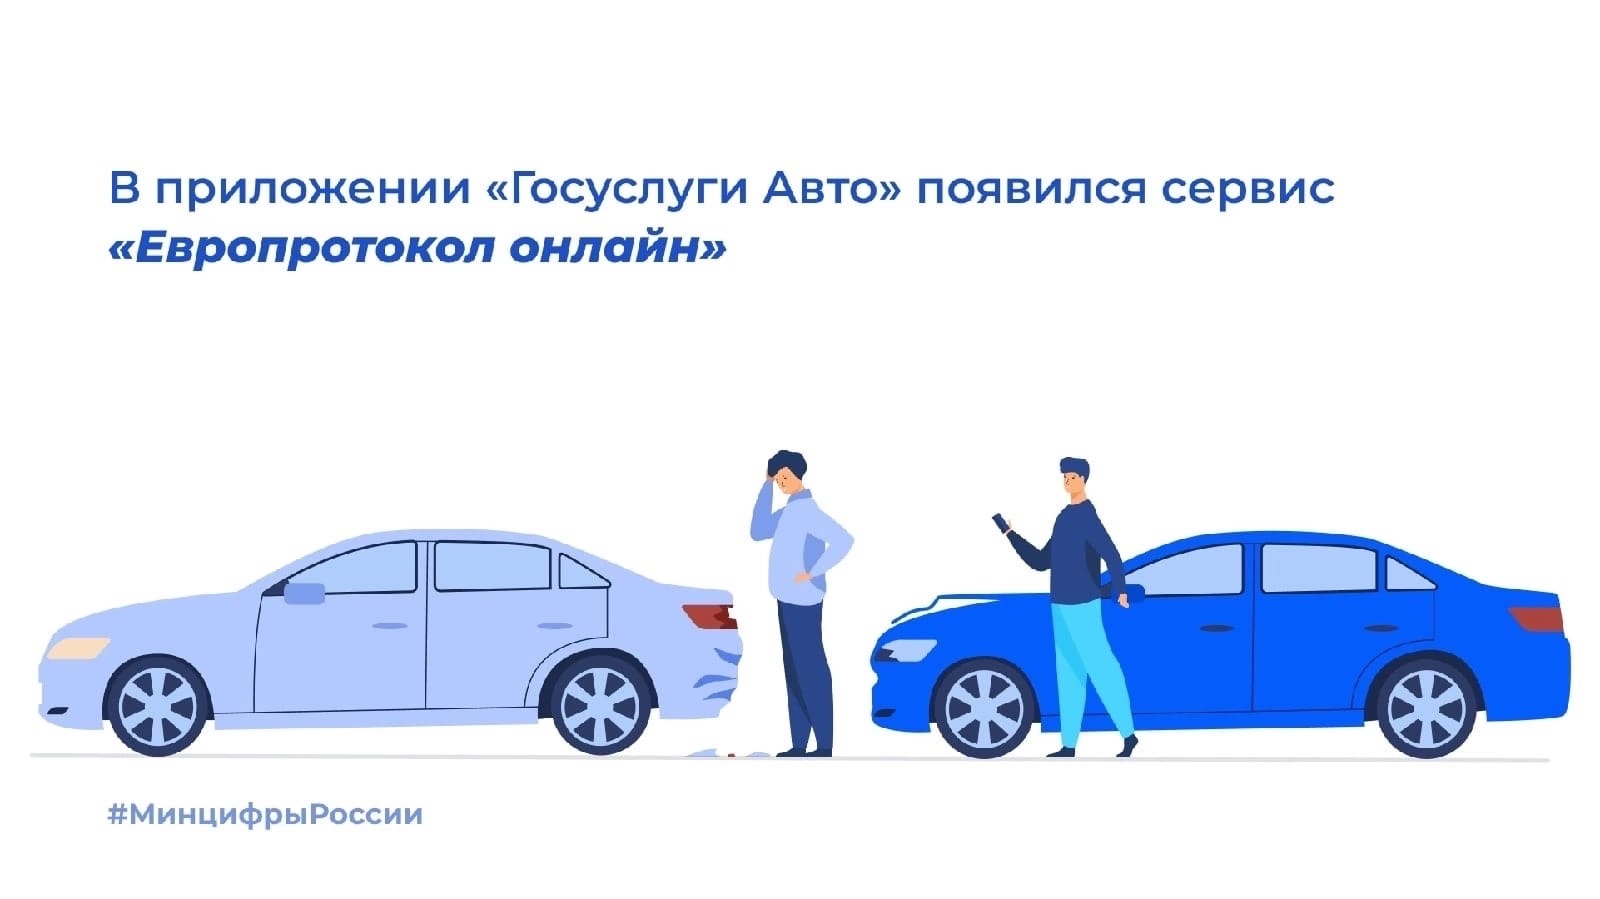  В приложении «Госуслуги Авто» появился сервис «Европротокол онлайн».